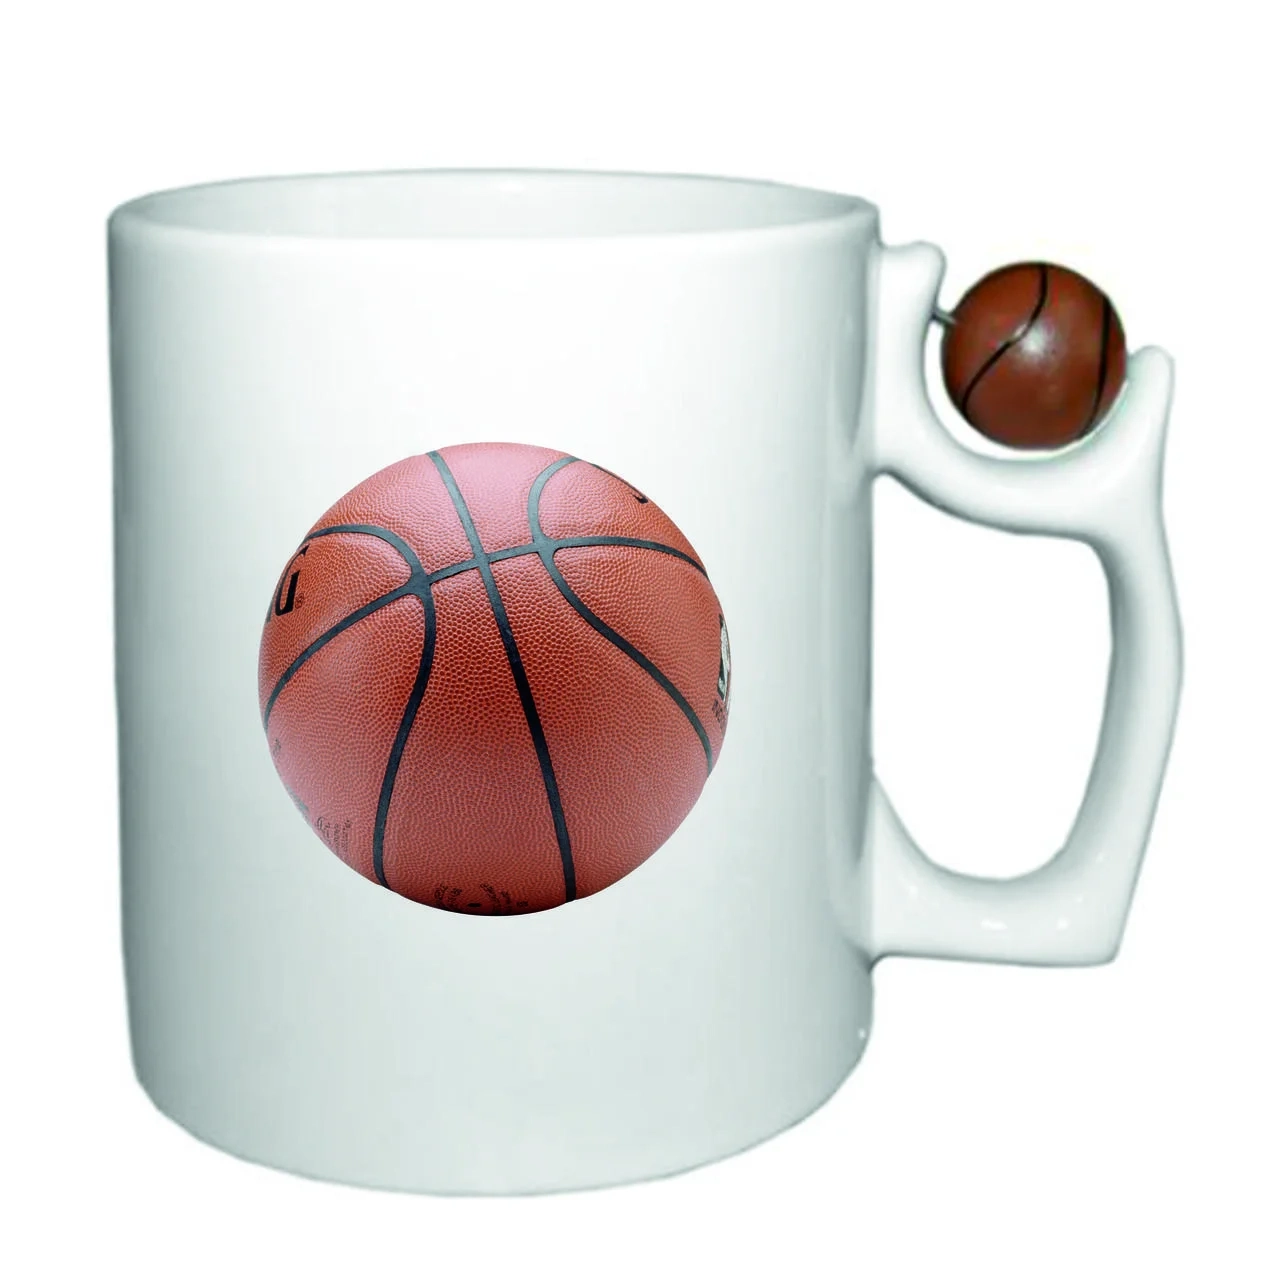 Купить Печать на кружке с баскетбольным мячом - фото 